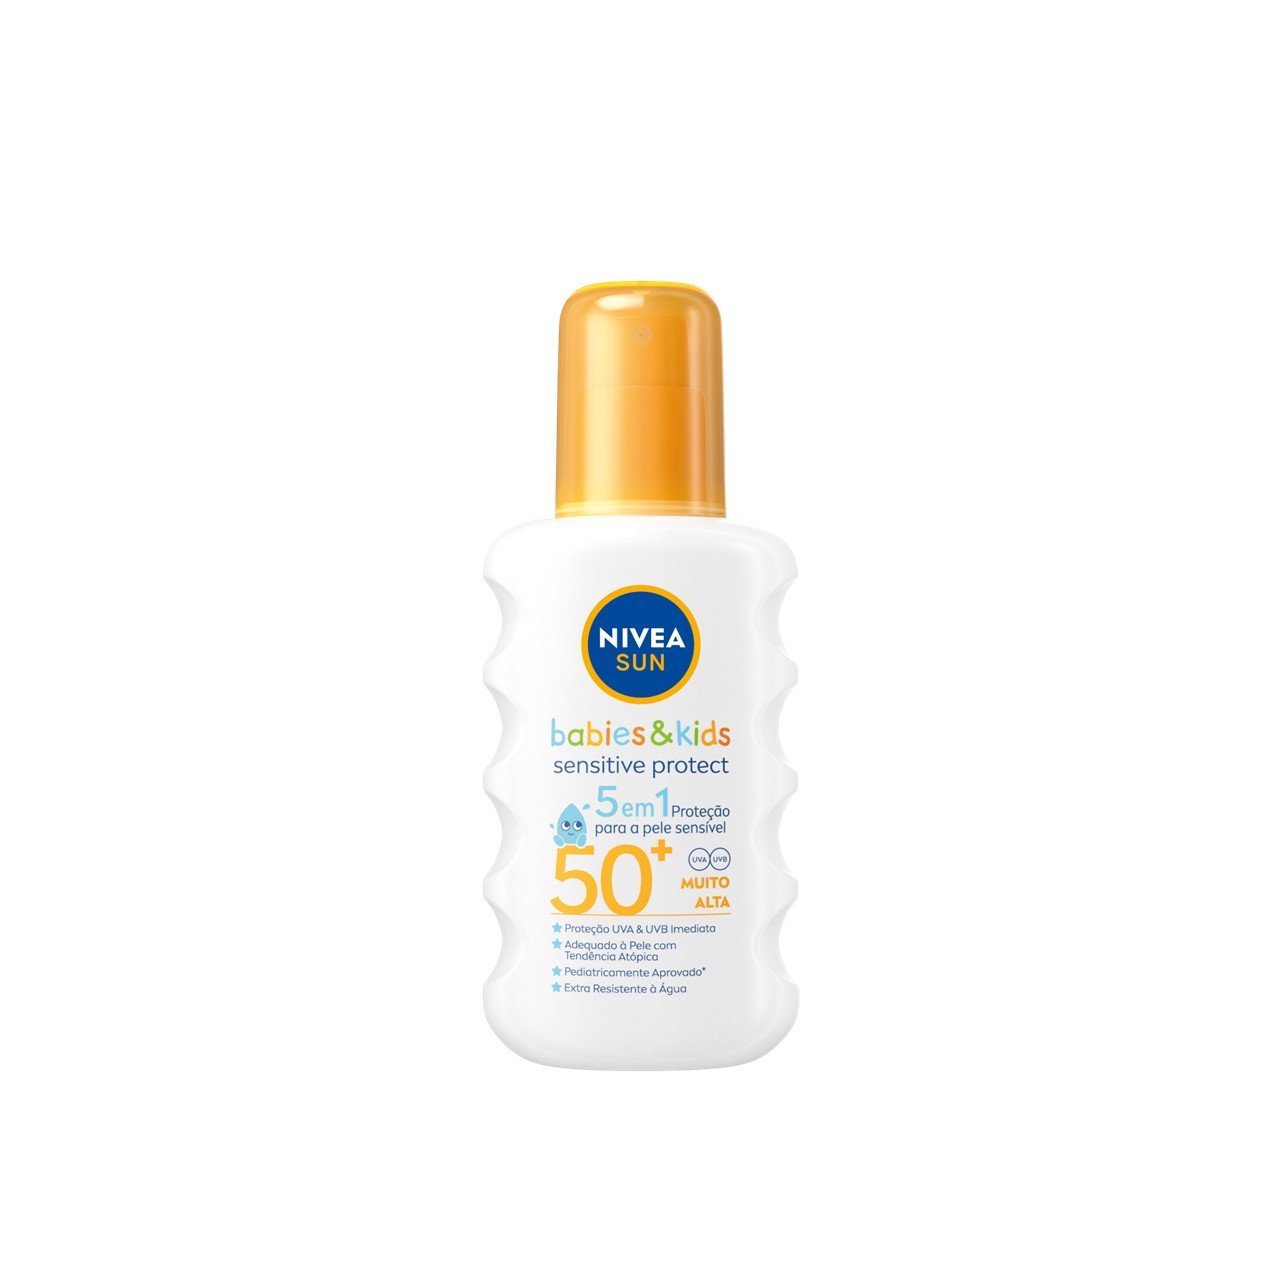 Nivea Sun Babies & Kids Sensitive Protect 5-in-1 Spray SPF50+ 200ml (6.76 fl oz)